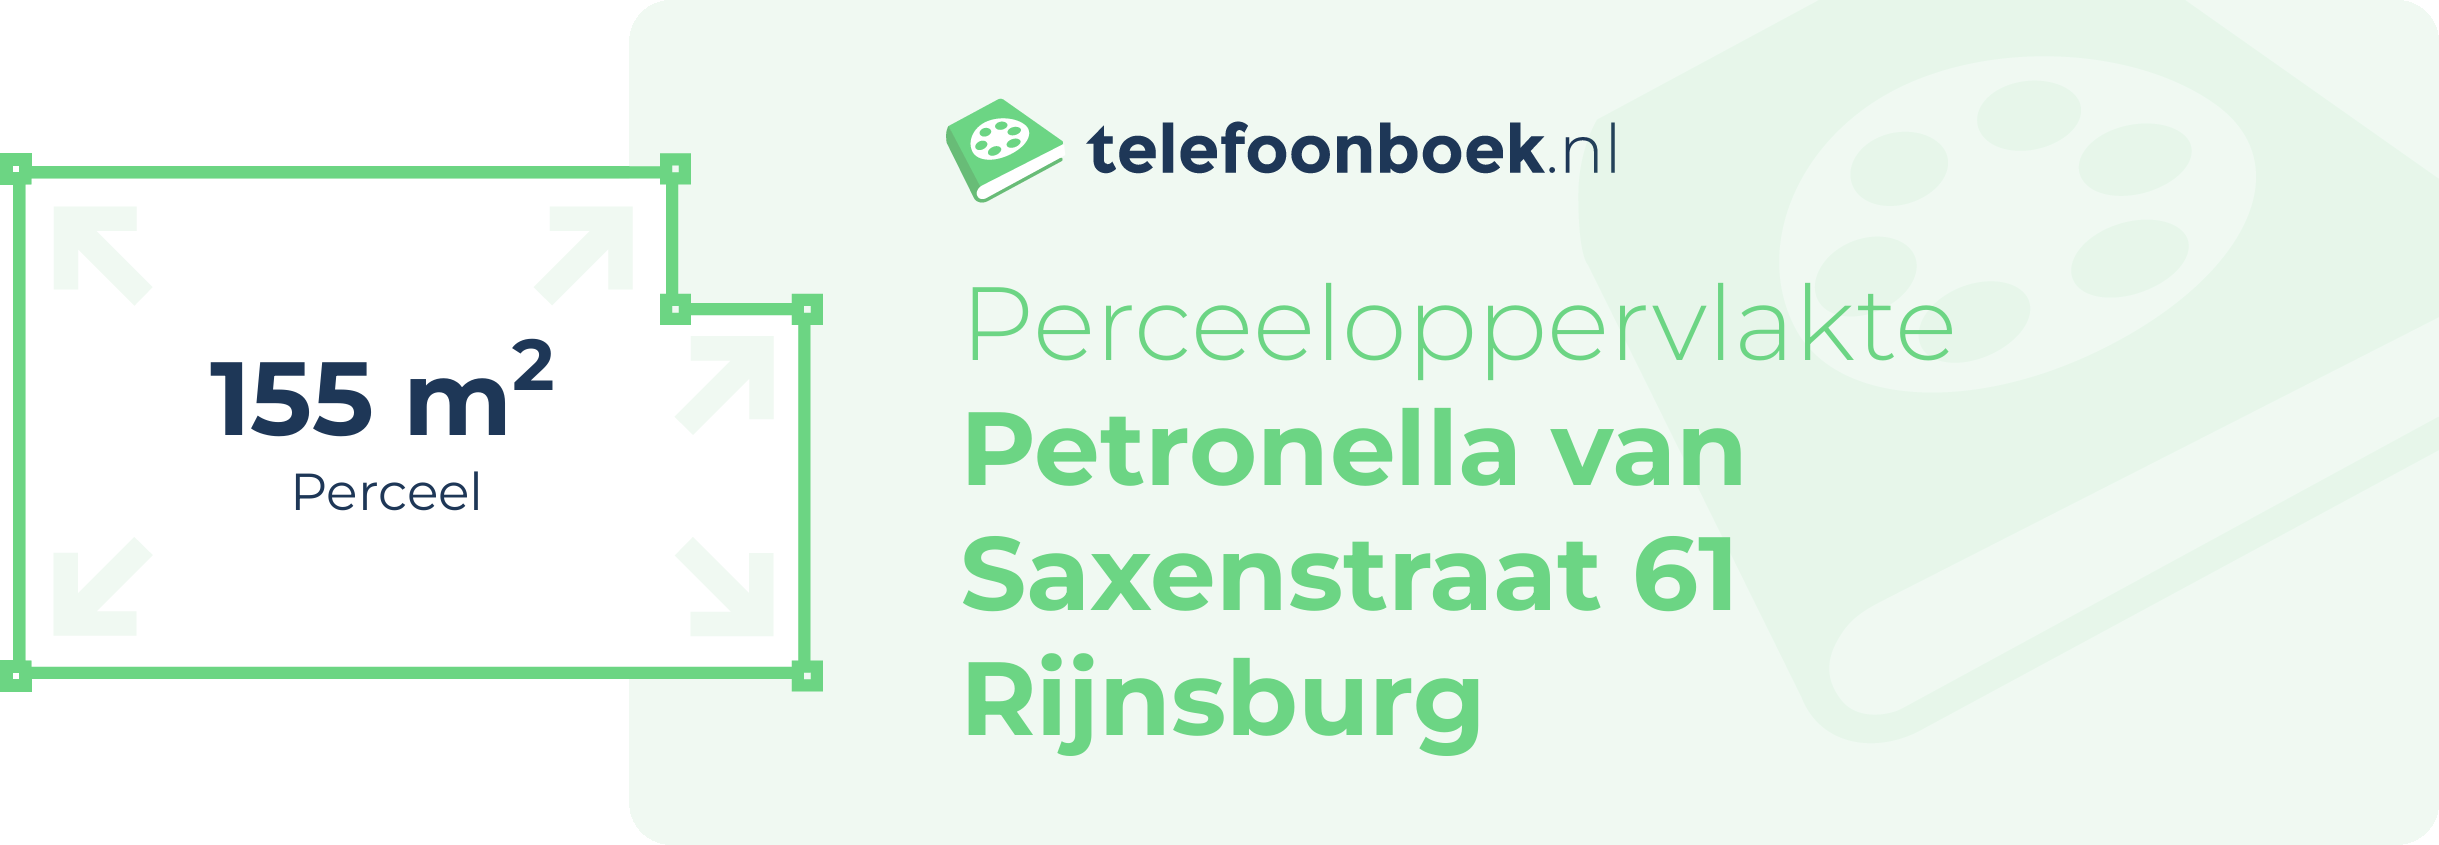 Perceeloppervlakte Petronella Van Saxenstraat 61 Rijnsburg